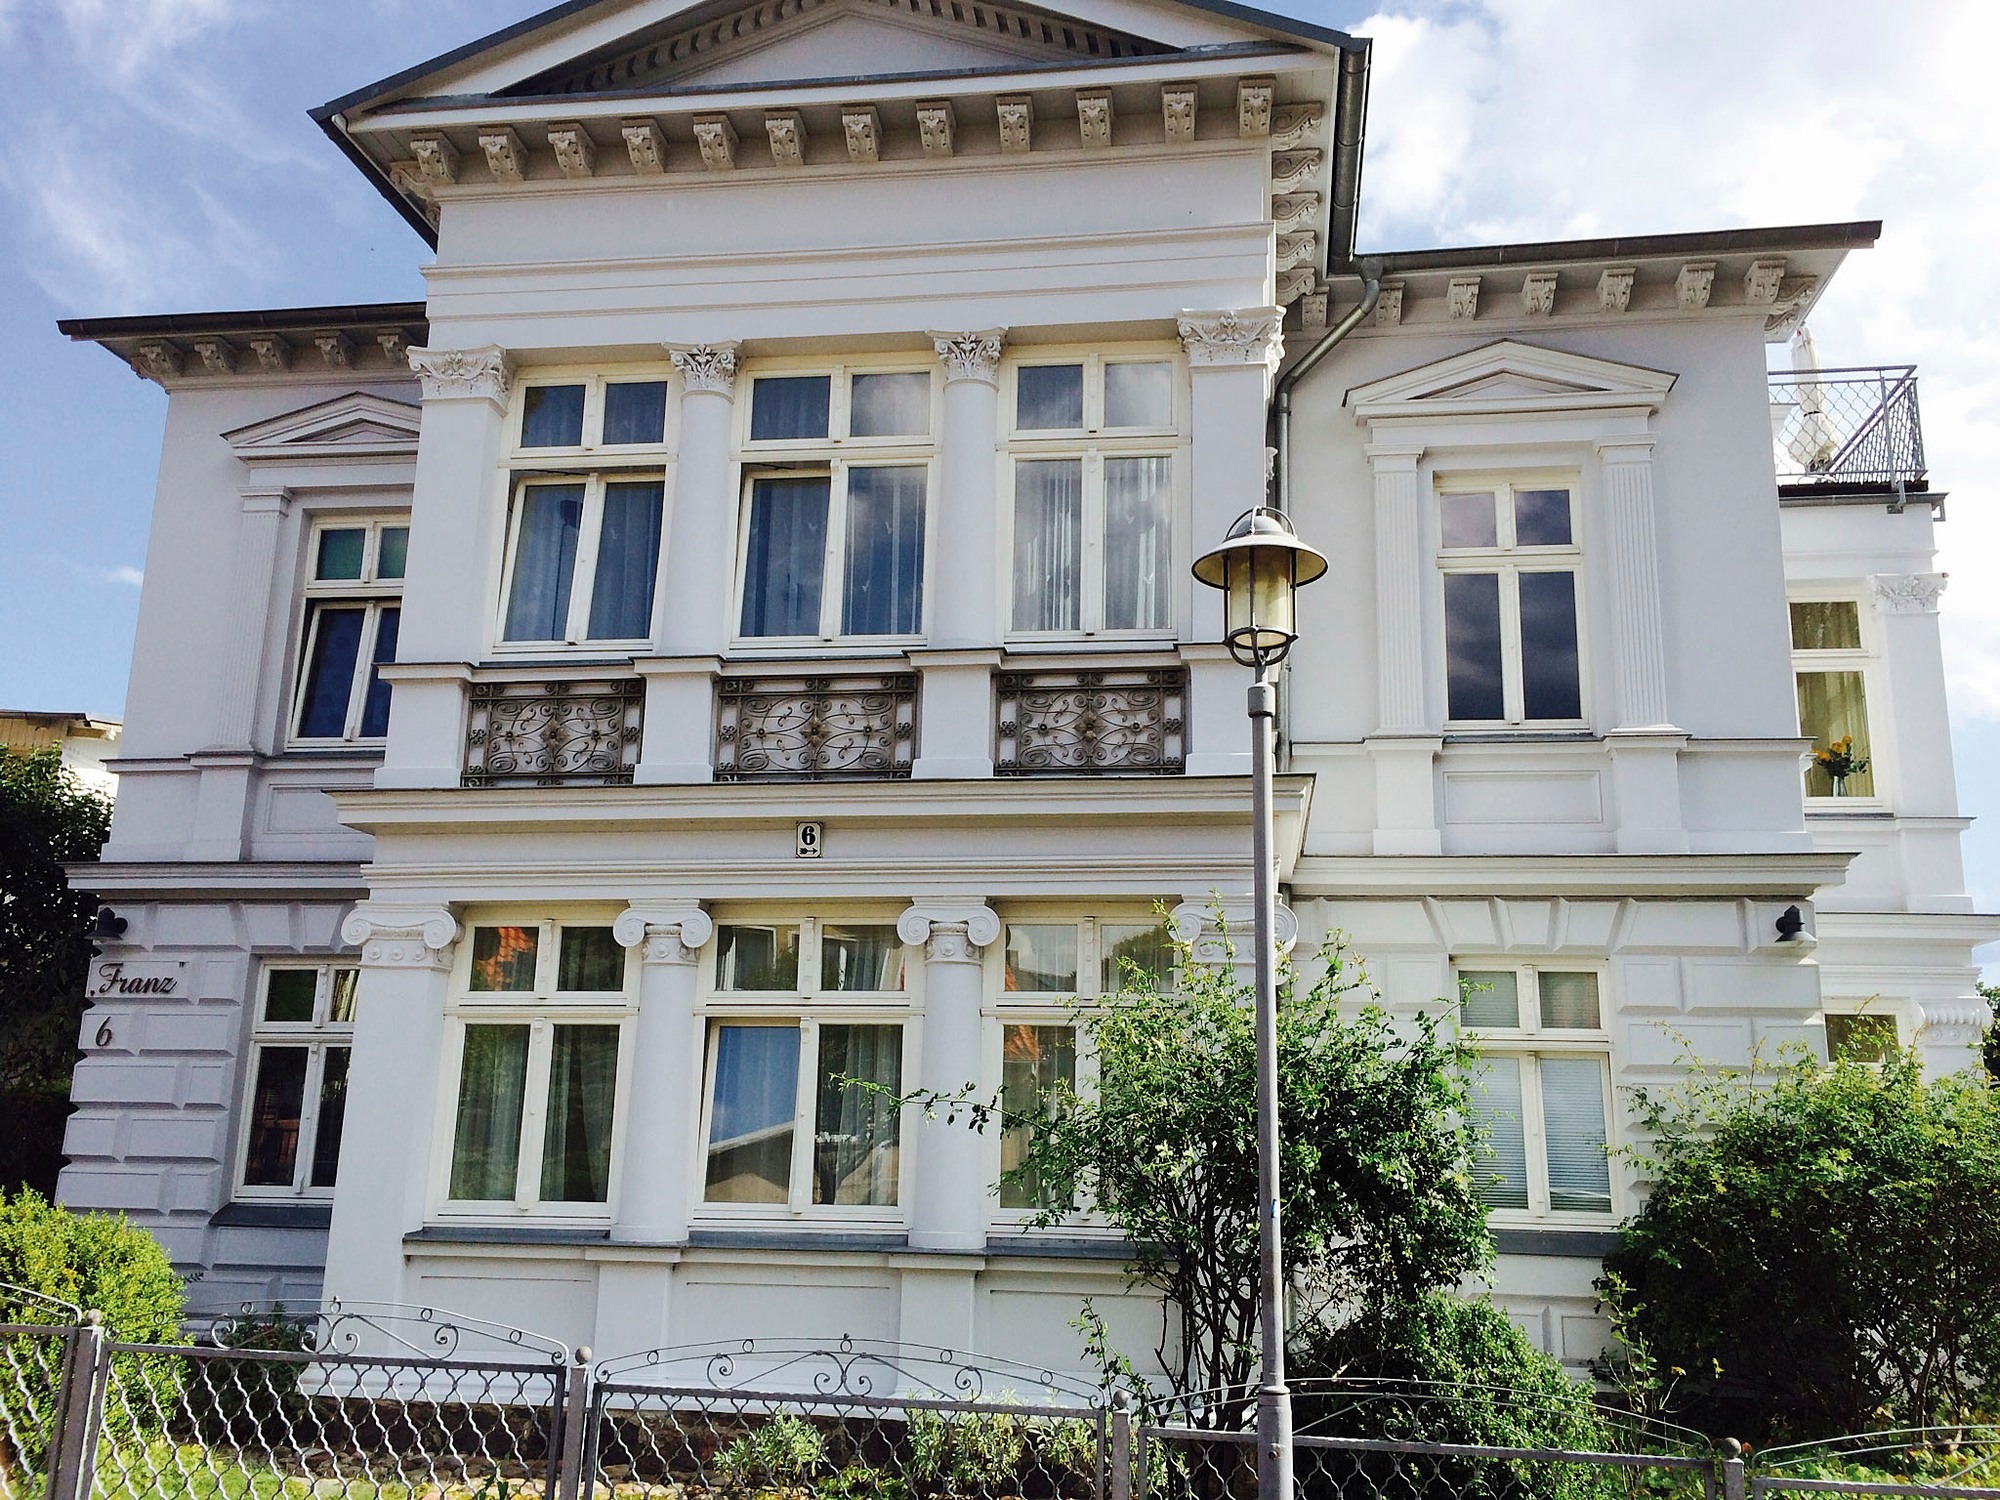 Villa Franz - Seestern Ferienwohnung auf Usedom